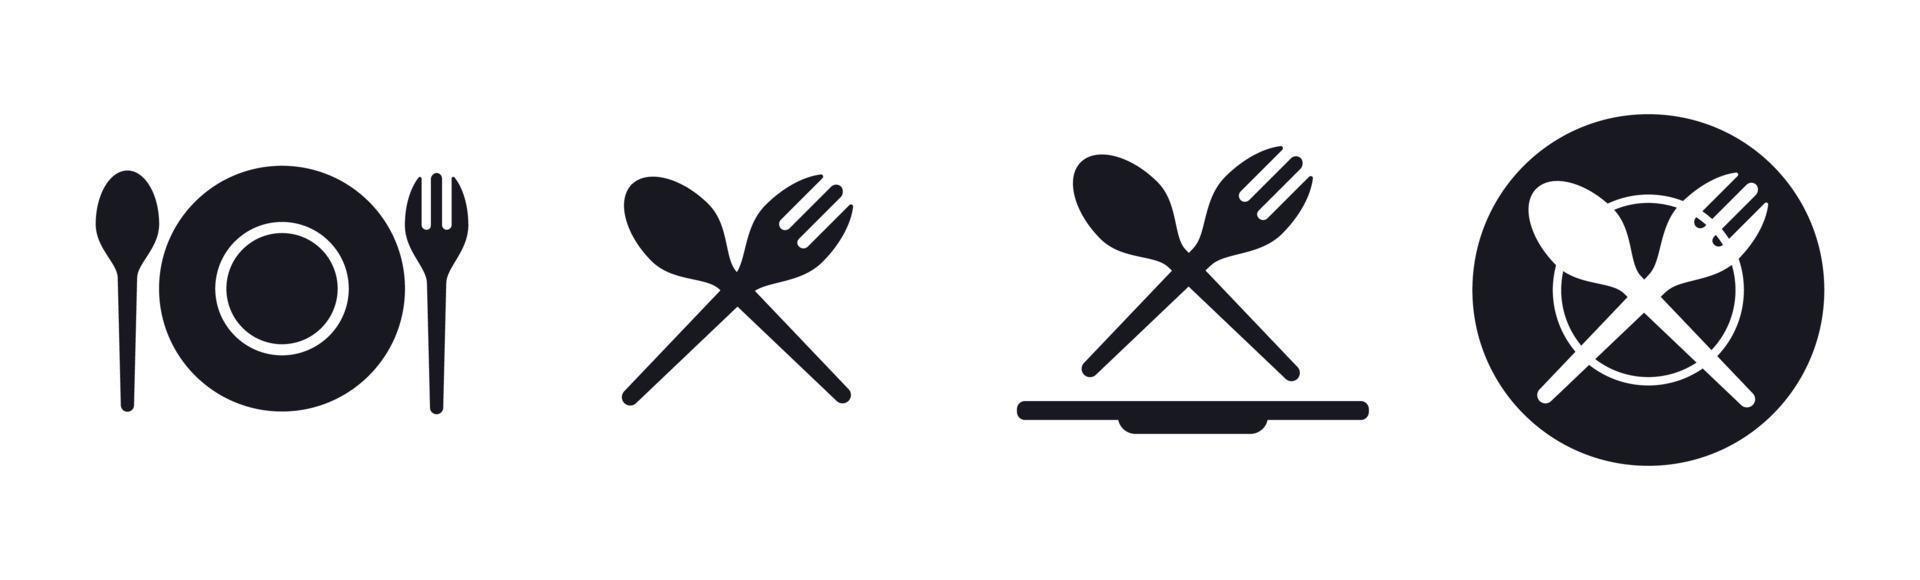 äter mat sked gaffel tallrik ikon uppsättning vektor